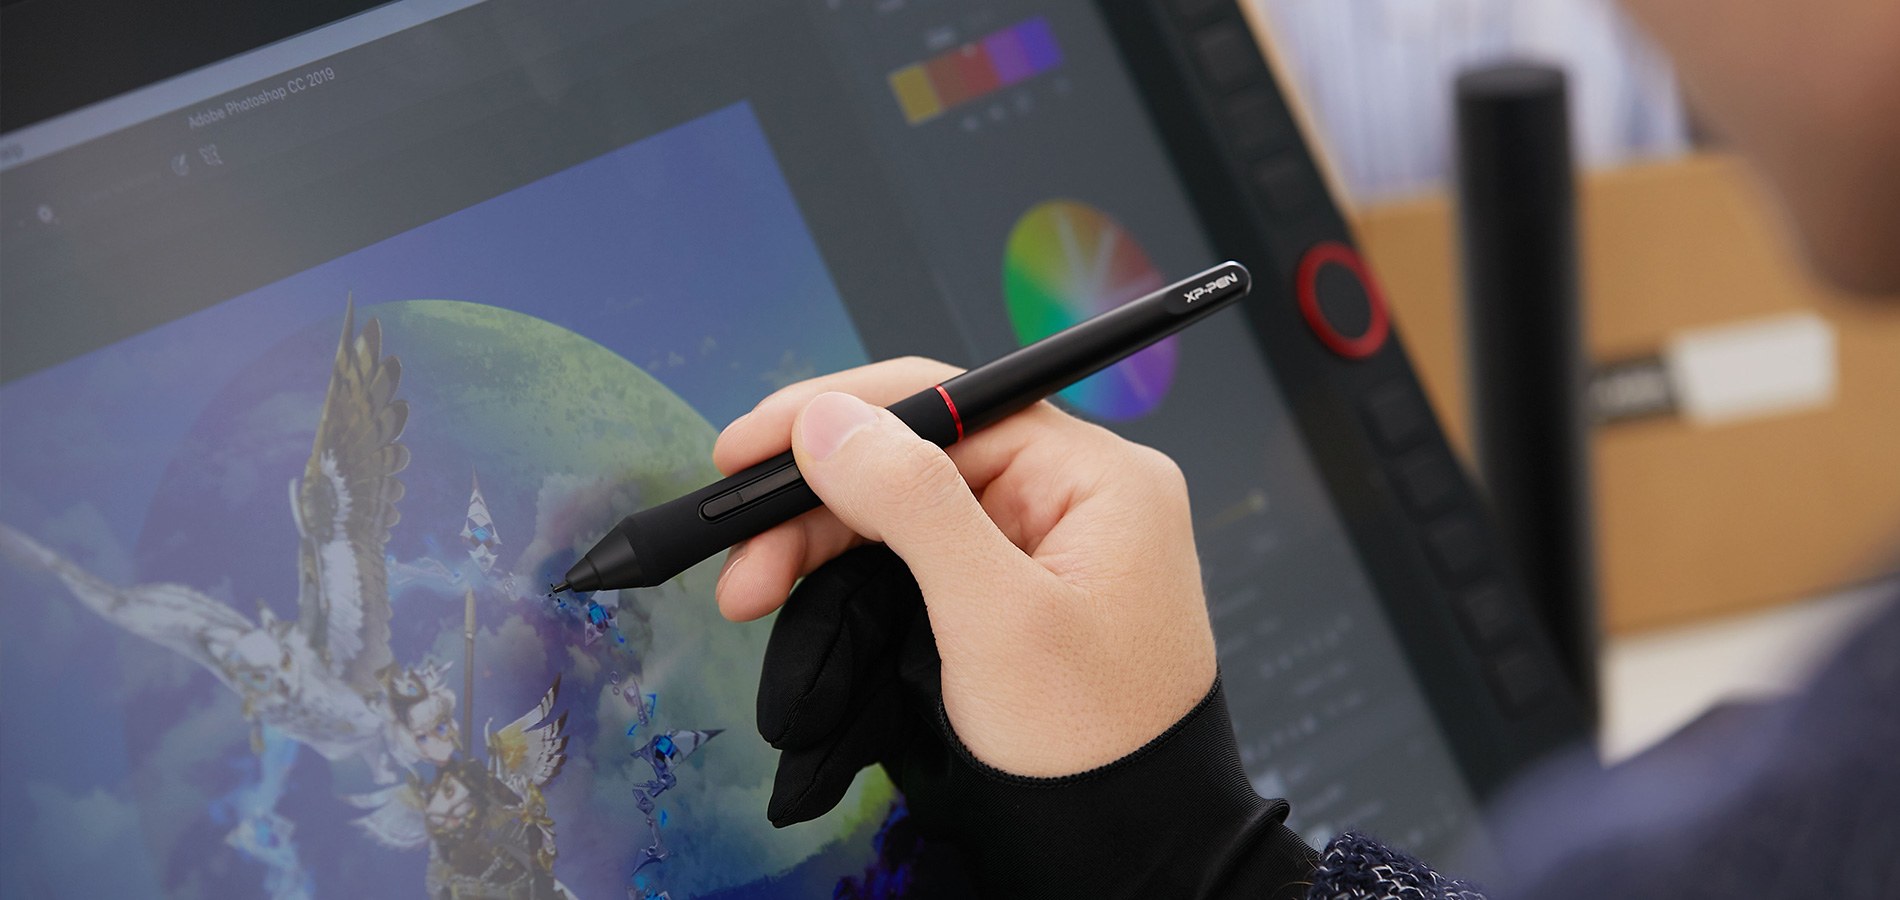  écrire et dessin avec tablette graphique écran XP-Pen Artist 22R Pro 